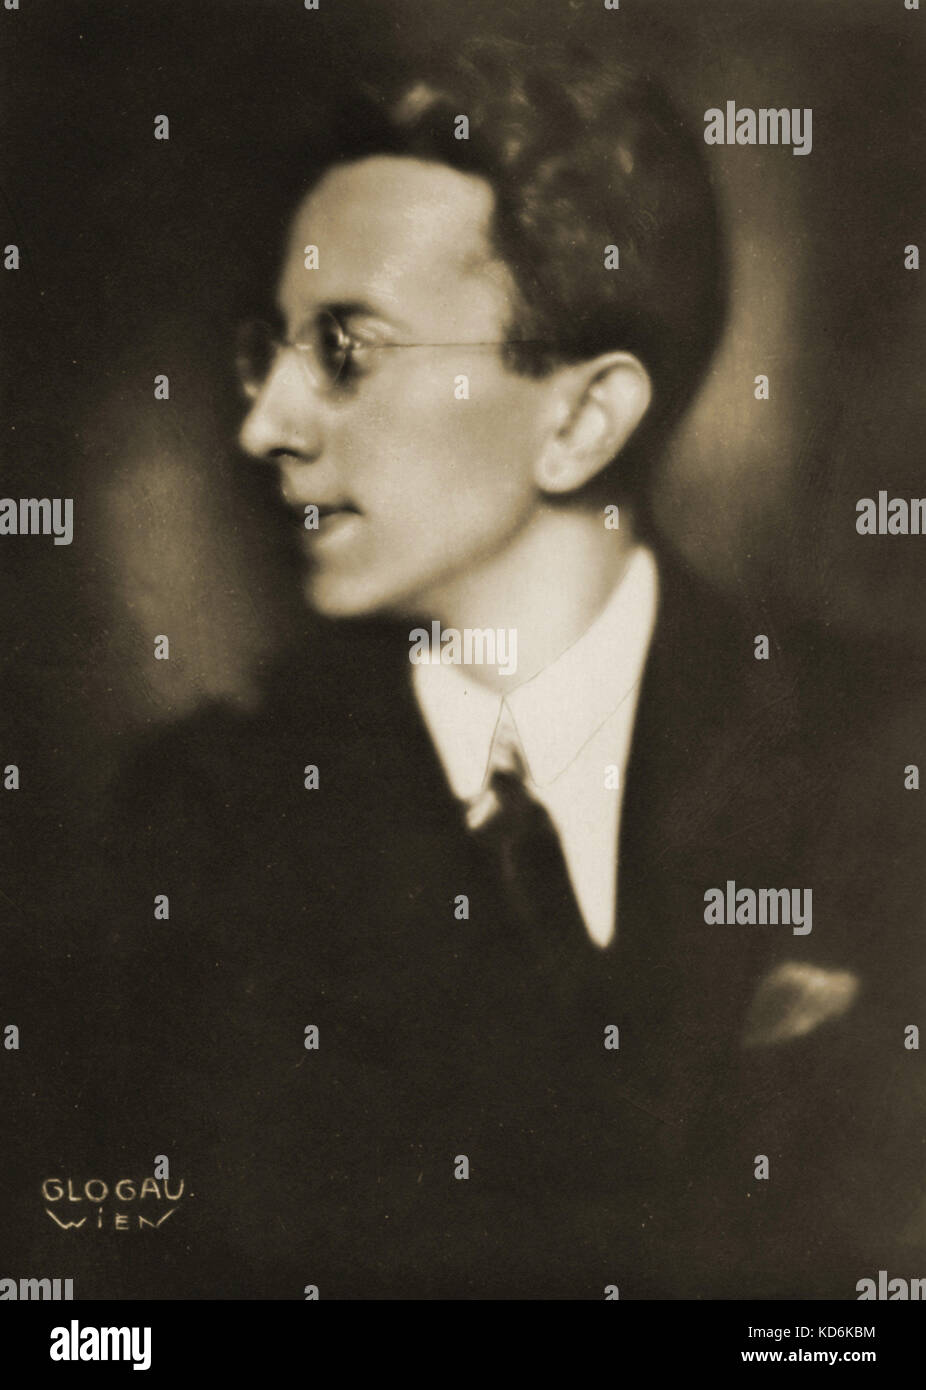 Fritz Mahler, Österreichisch-Dirigent, 1901-1973. Neffe von Gustav Mahler. Foto von Glogau, Wien übernommen. Stockfoto